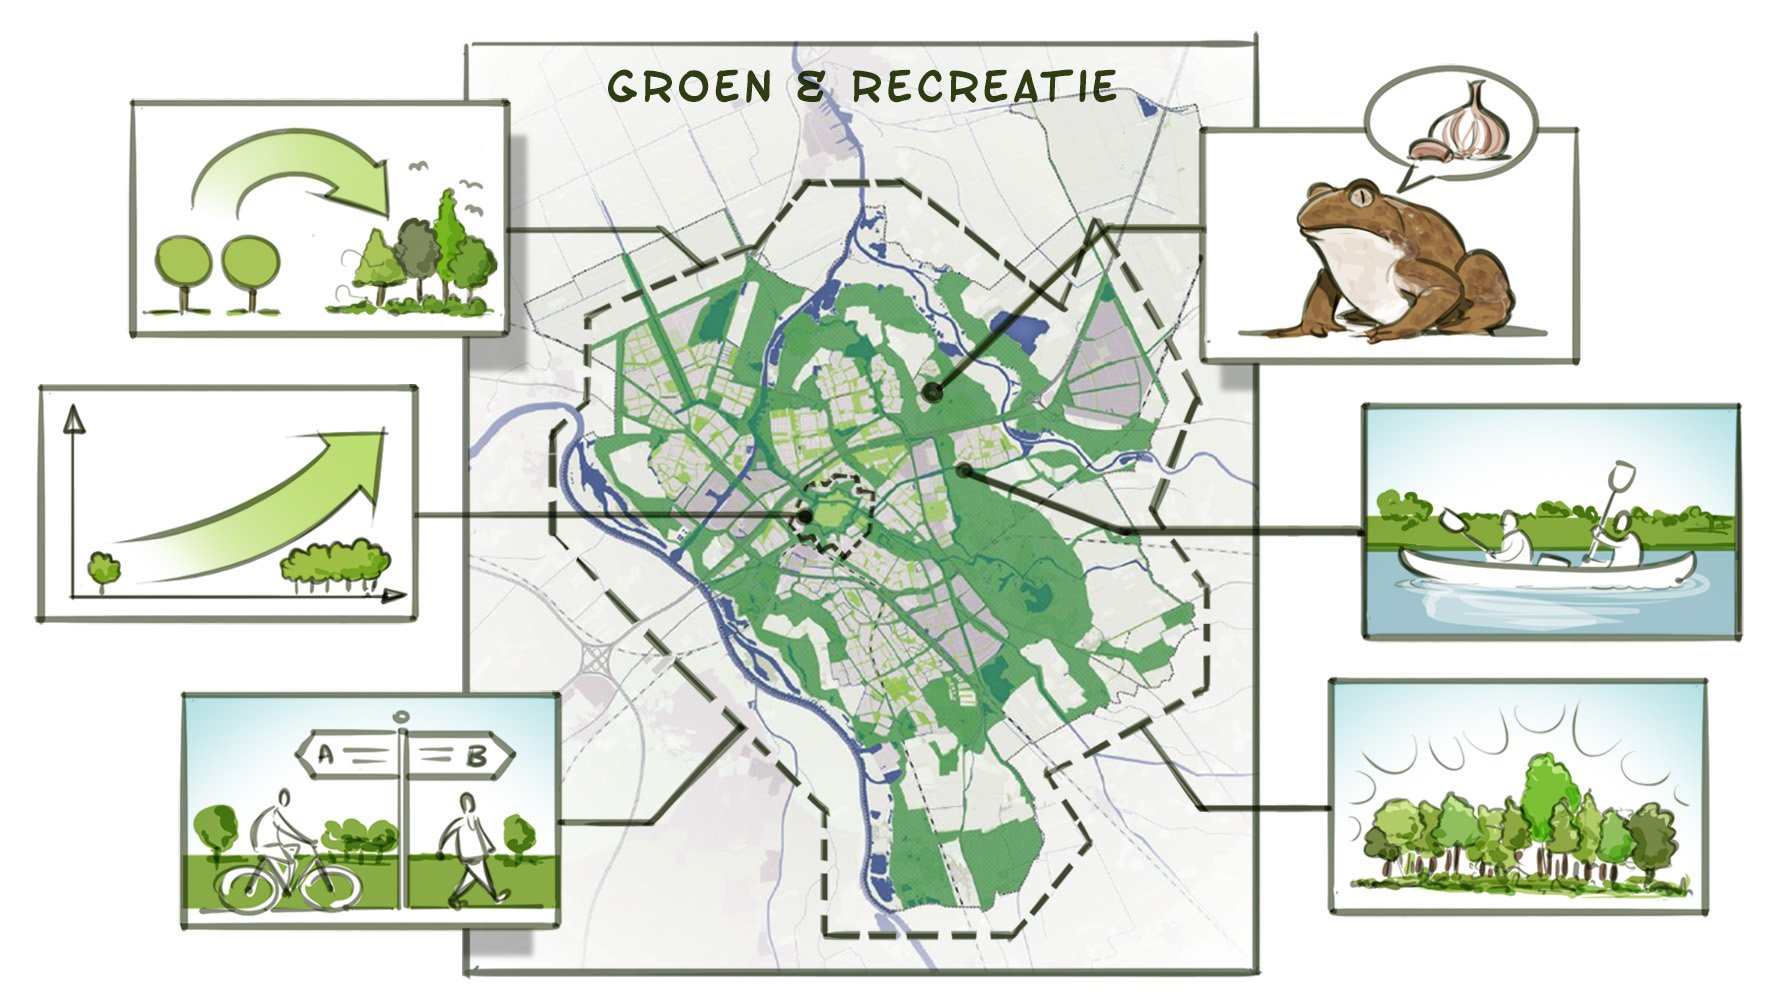 Kaart van Zwolle. De groen- en recreatiegebieden worden gekleurd weergegeven.